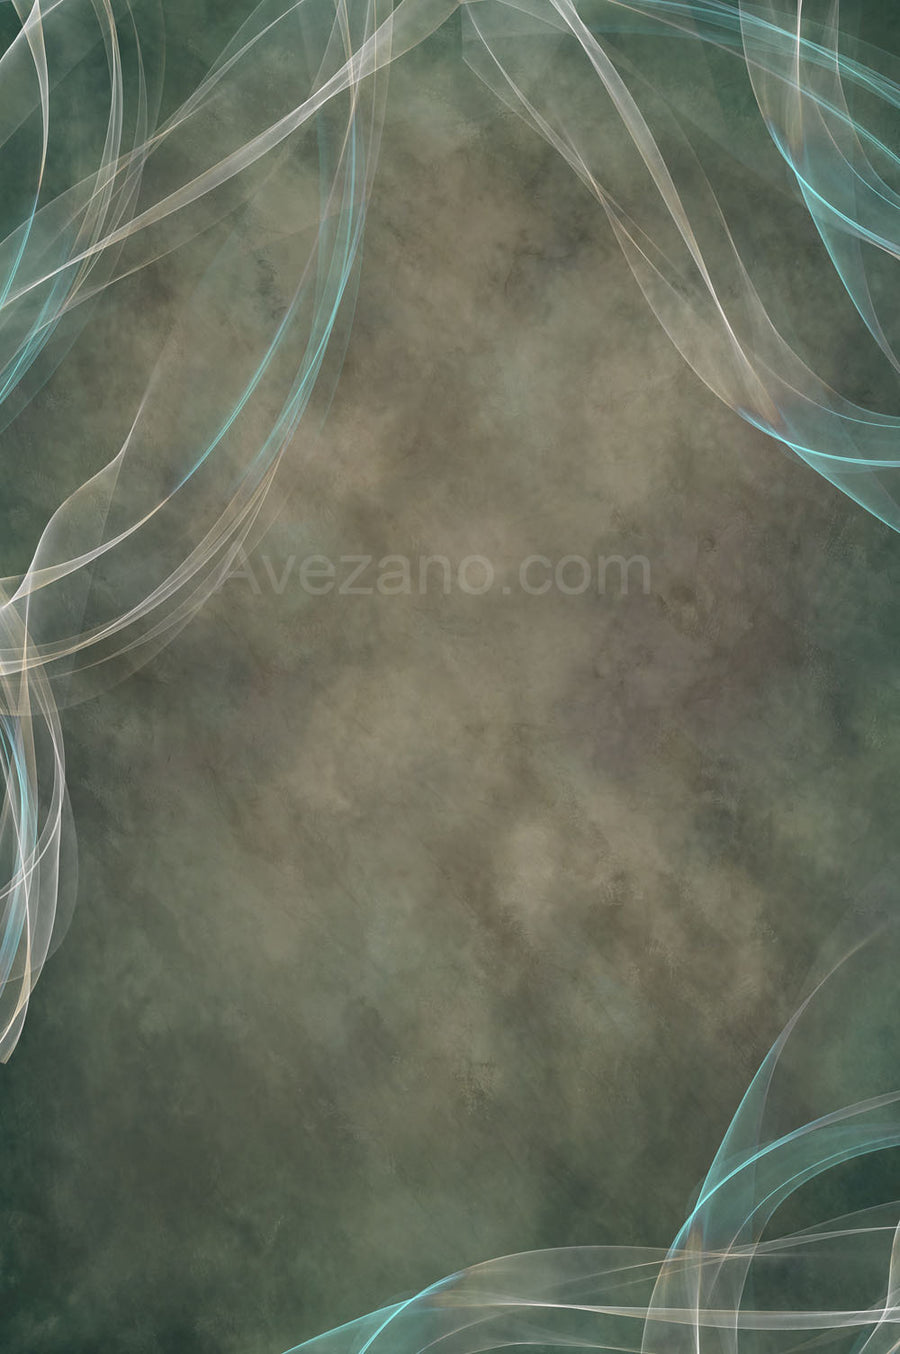 Avezano Light Green Gauze Texture Abstract Fine Art Photography Backdrop